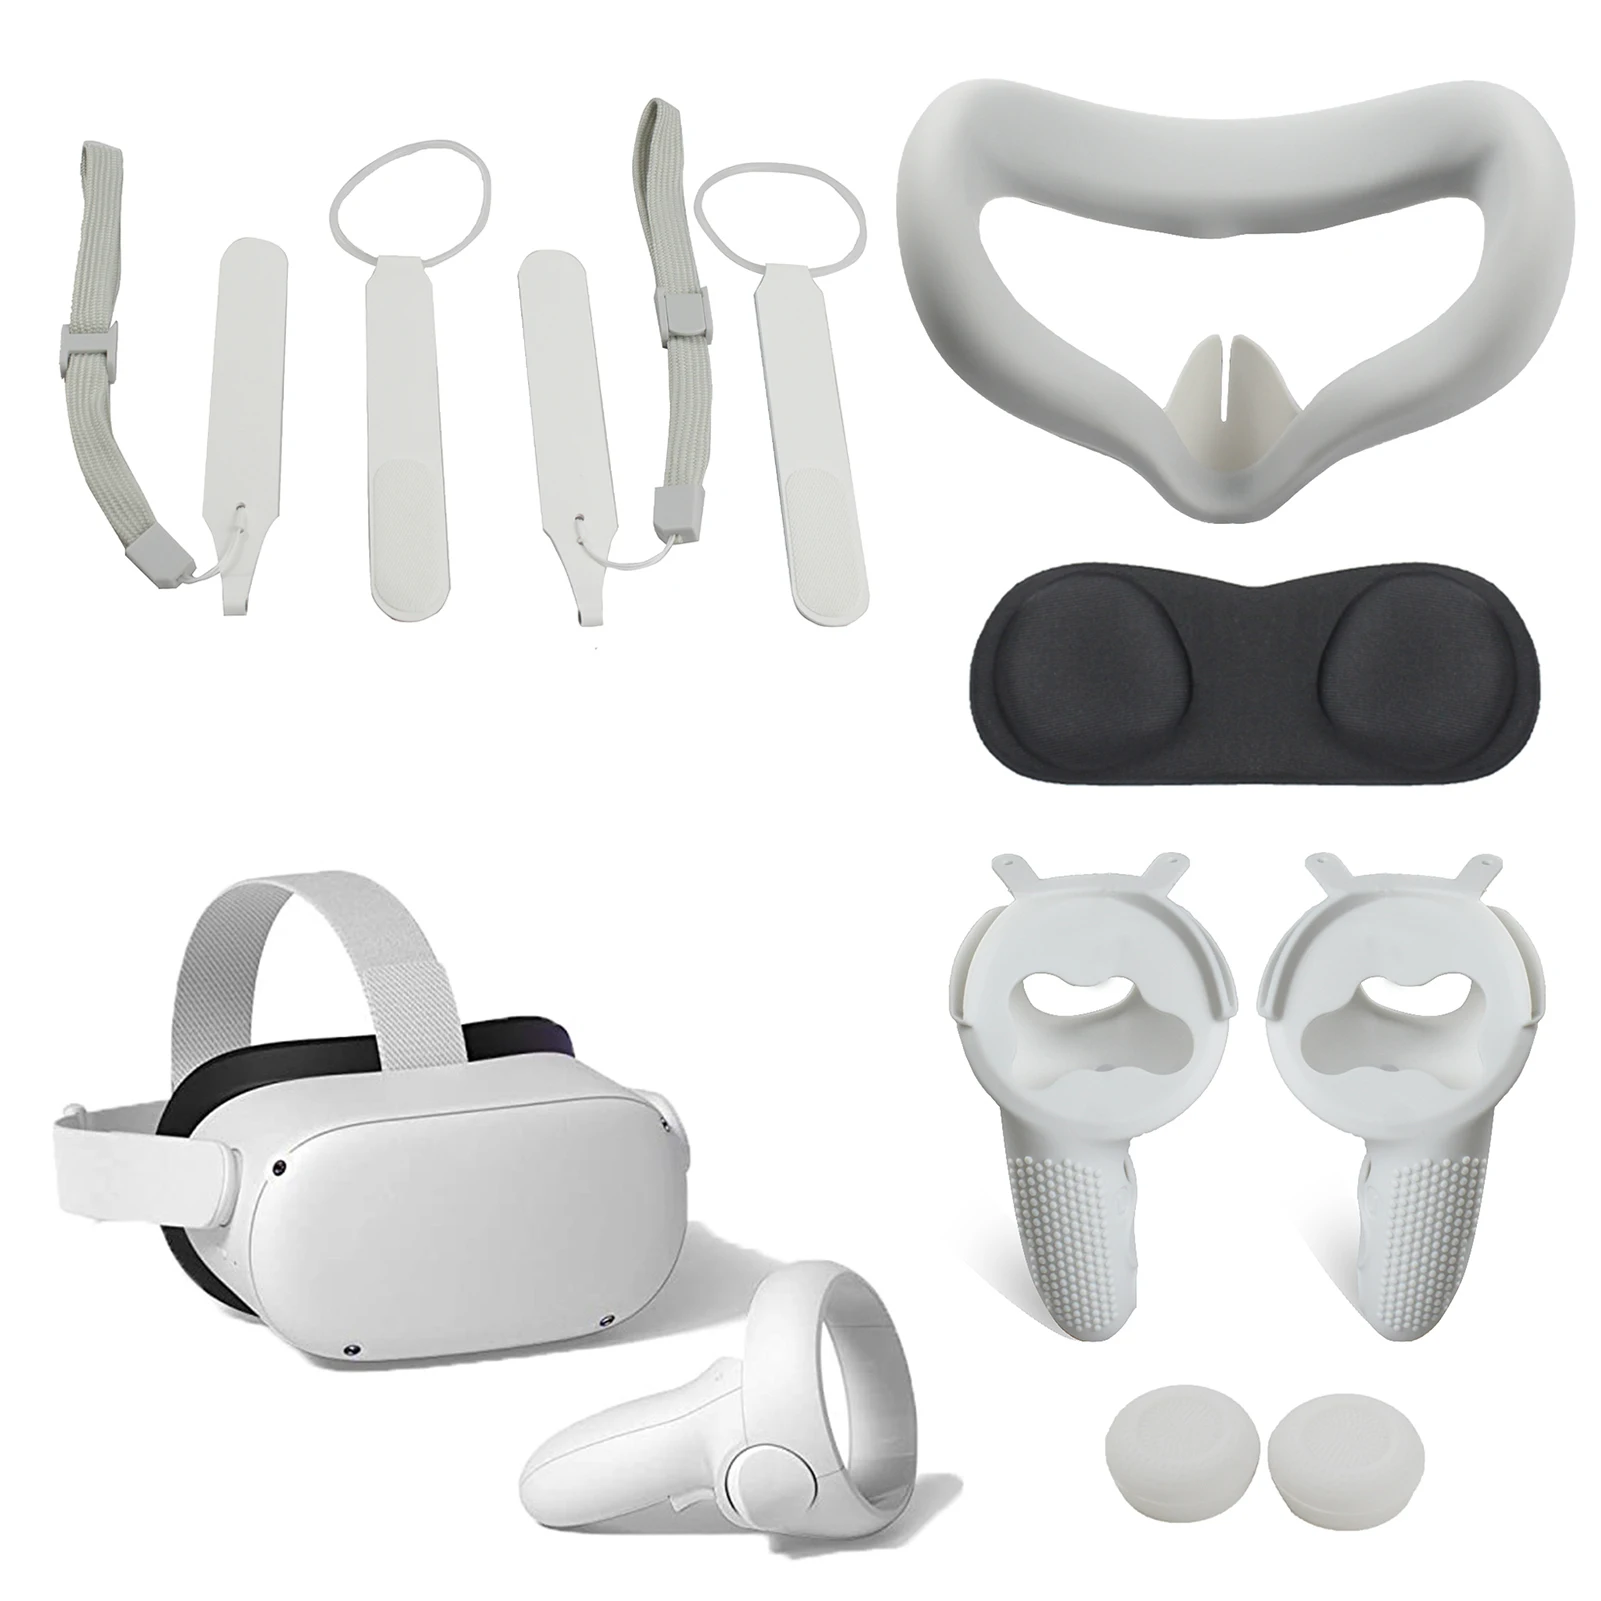 

Набор аксессуаров для Oculus Quest 2 VR, силиконовая наволочка для защиты лица от пота, защитный чехол для контроллера, ремешки на руку, чехлы для ли...